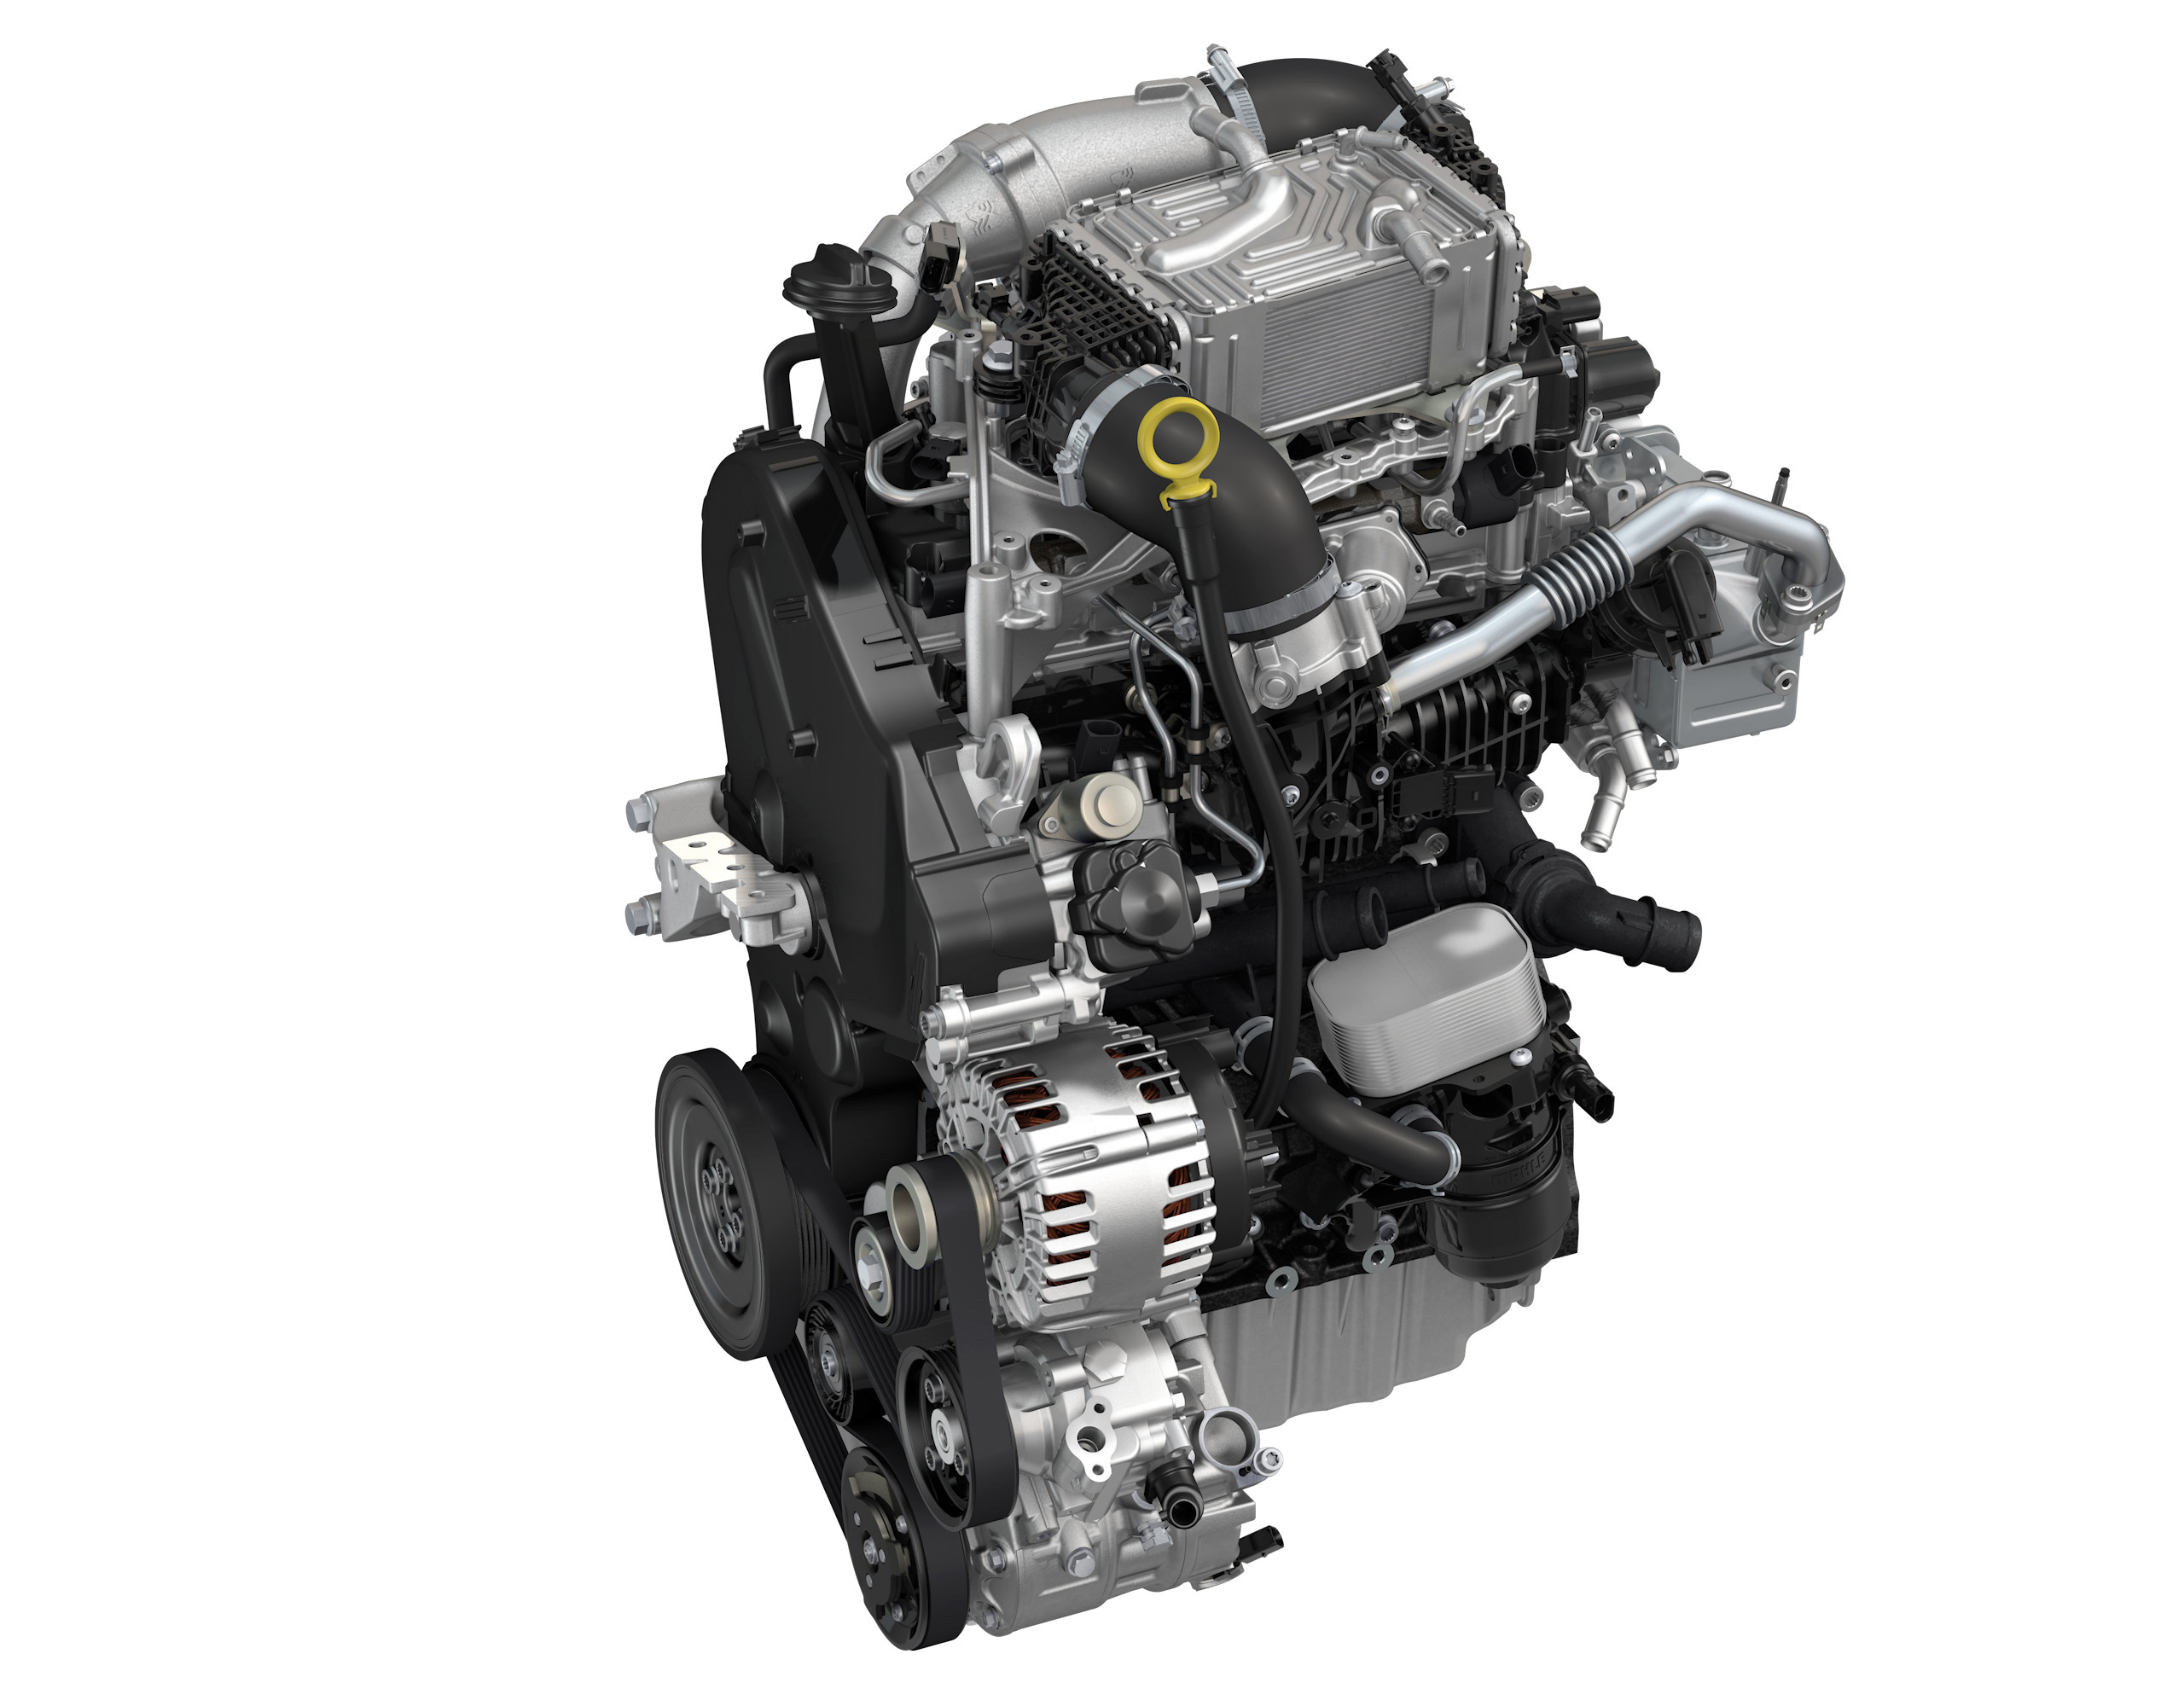 Дизель 1.9 л. Двигатель Крафтер 2.0 дизель. 2.0 TDI 140 Л.С дизель. Двигатель 1.6 дизель Фольксваген. Volkswagen с двигателем 2.0 TDI.